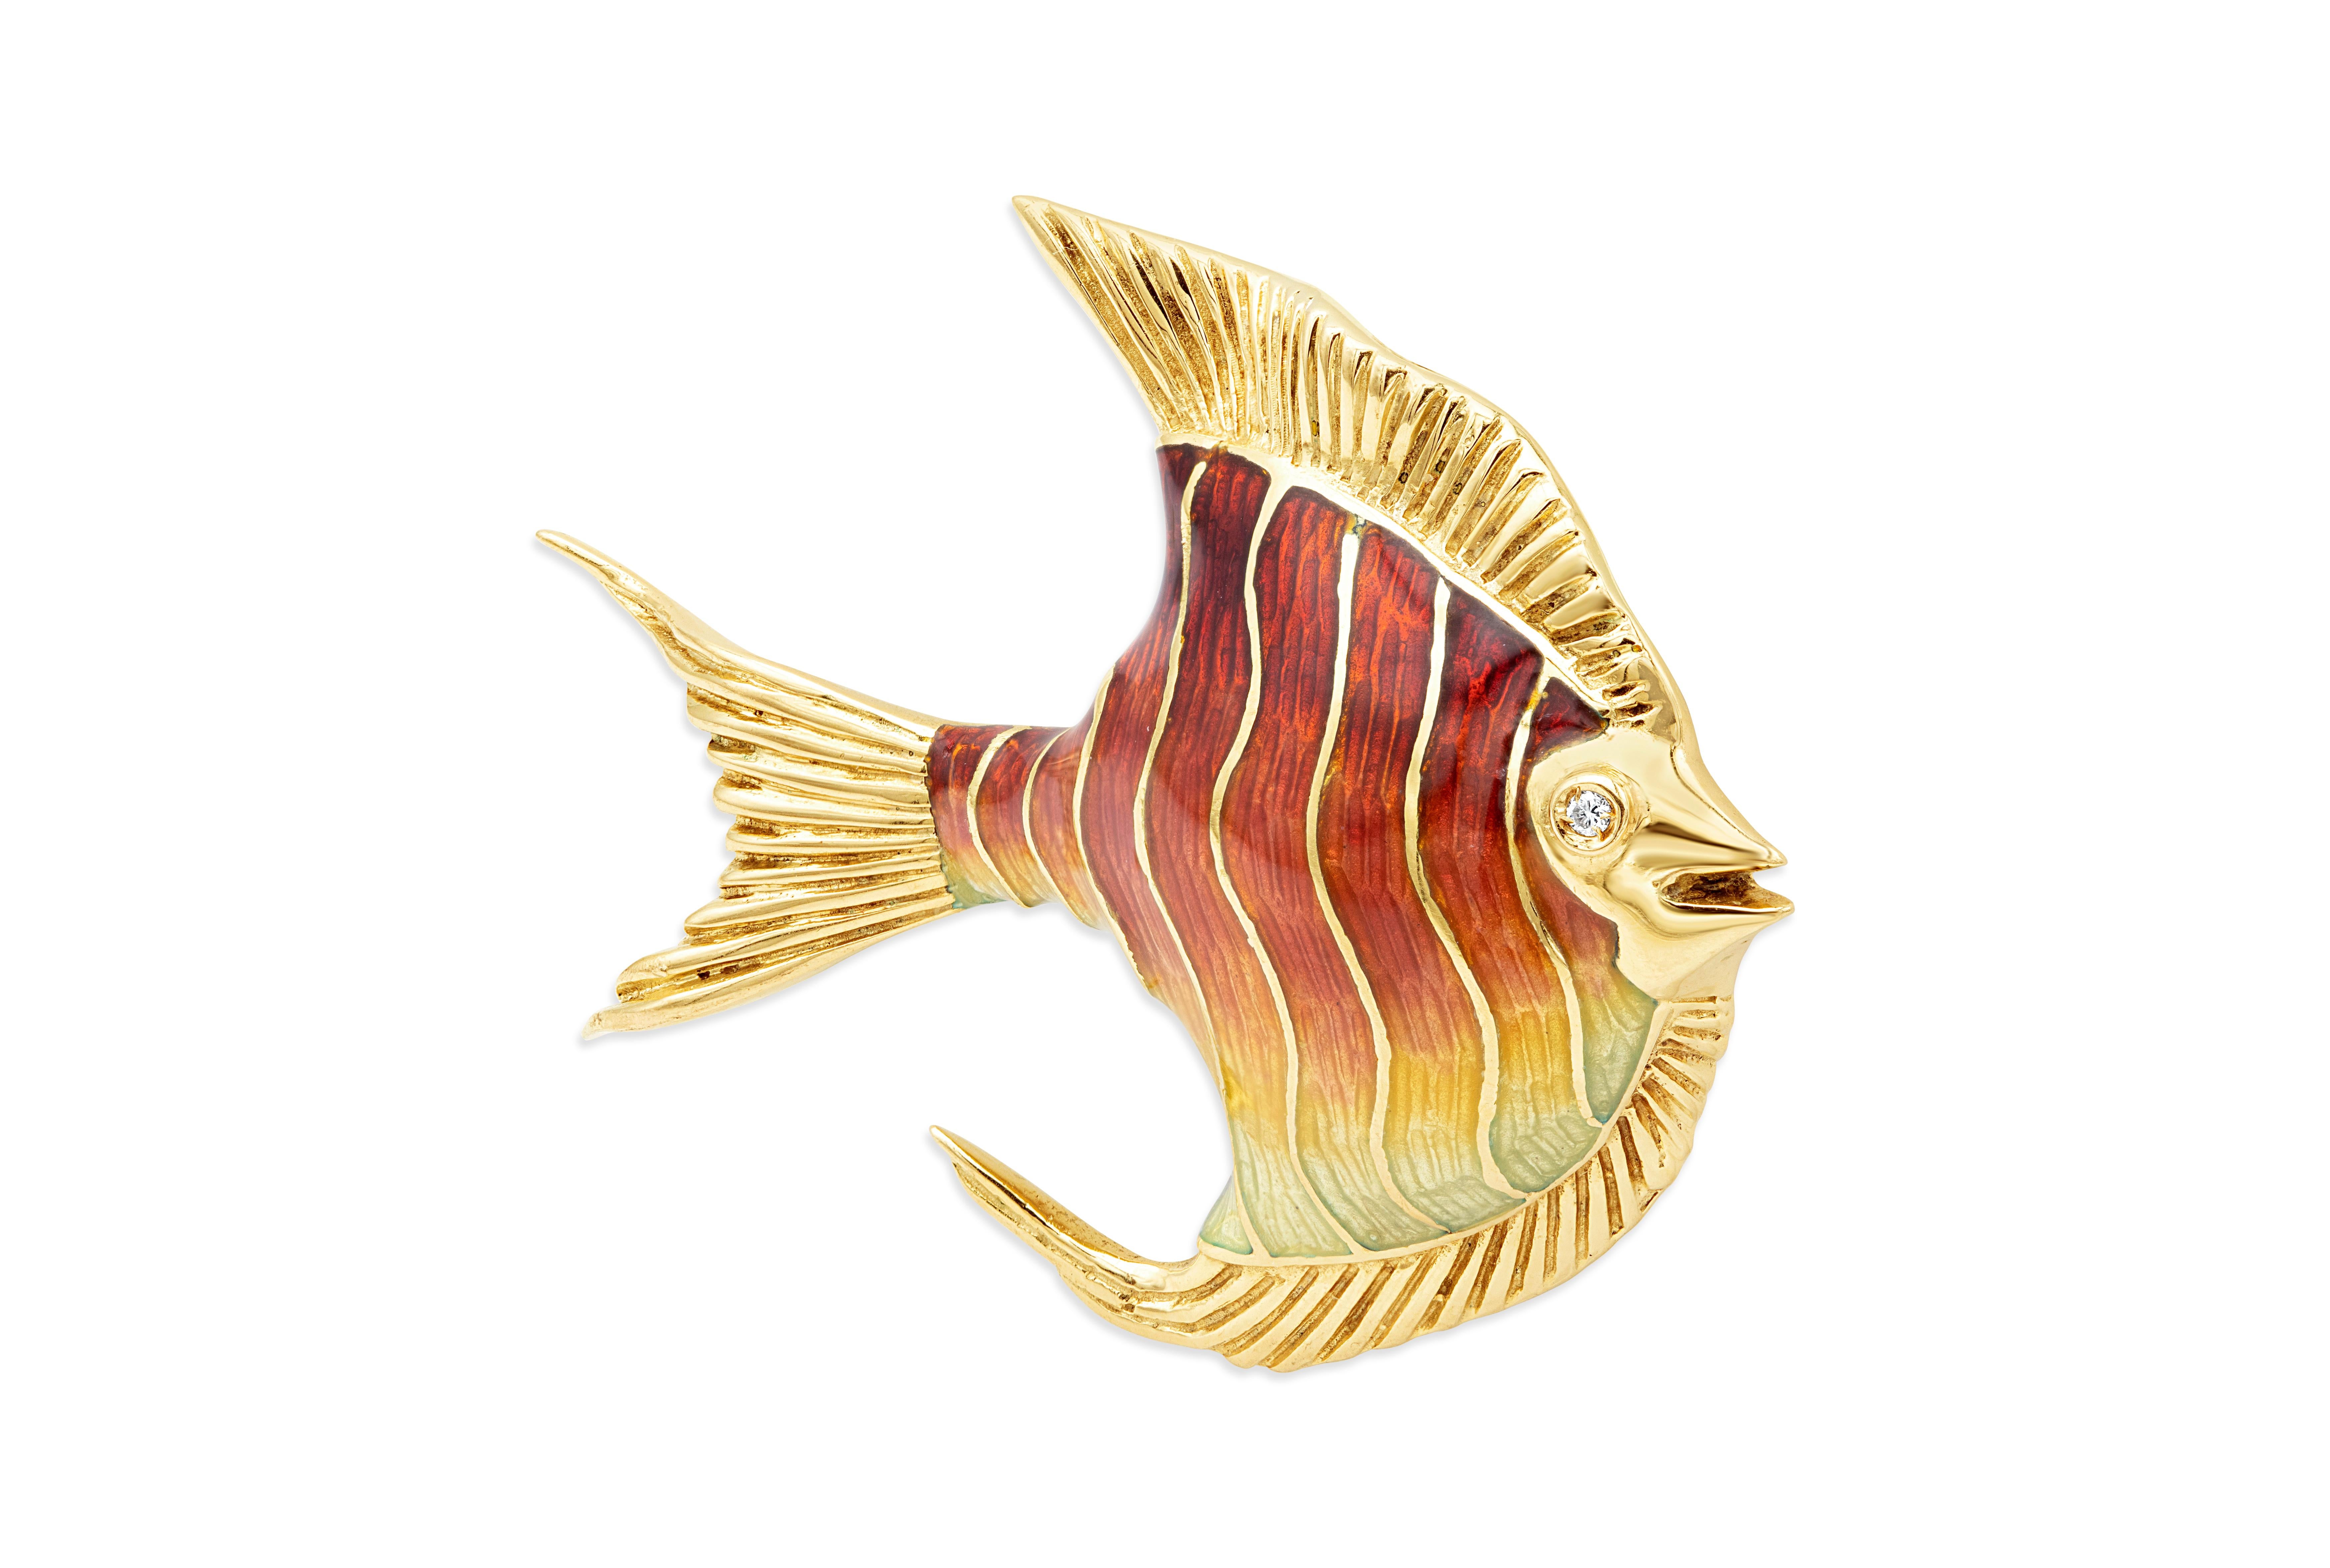 Broche en or jaune 18 carats de belle facture, représentant un poisson-ange rehaussé d'émail rouge et d'yeux en diamants ronds et brillants.

